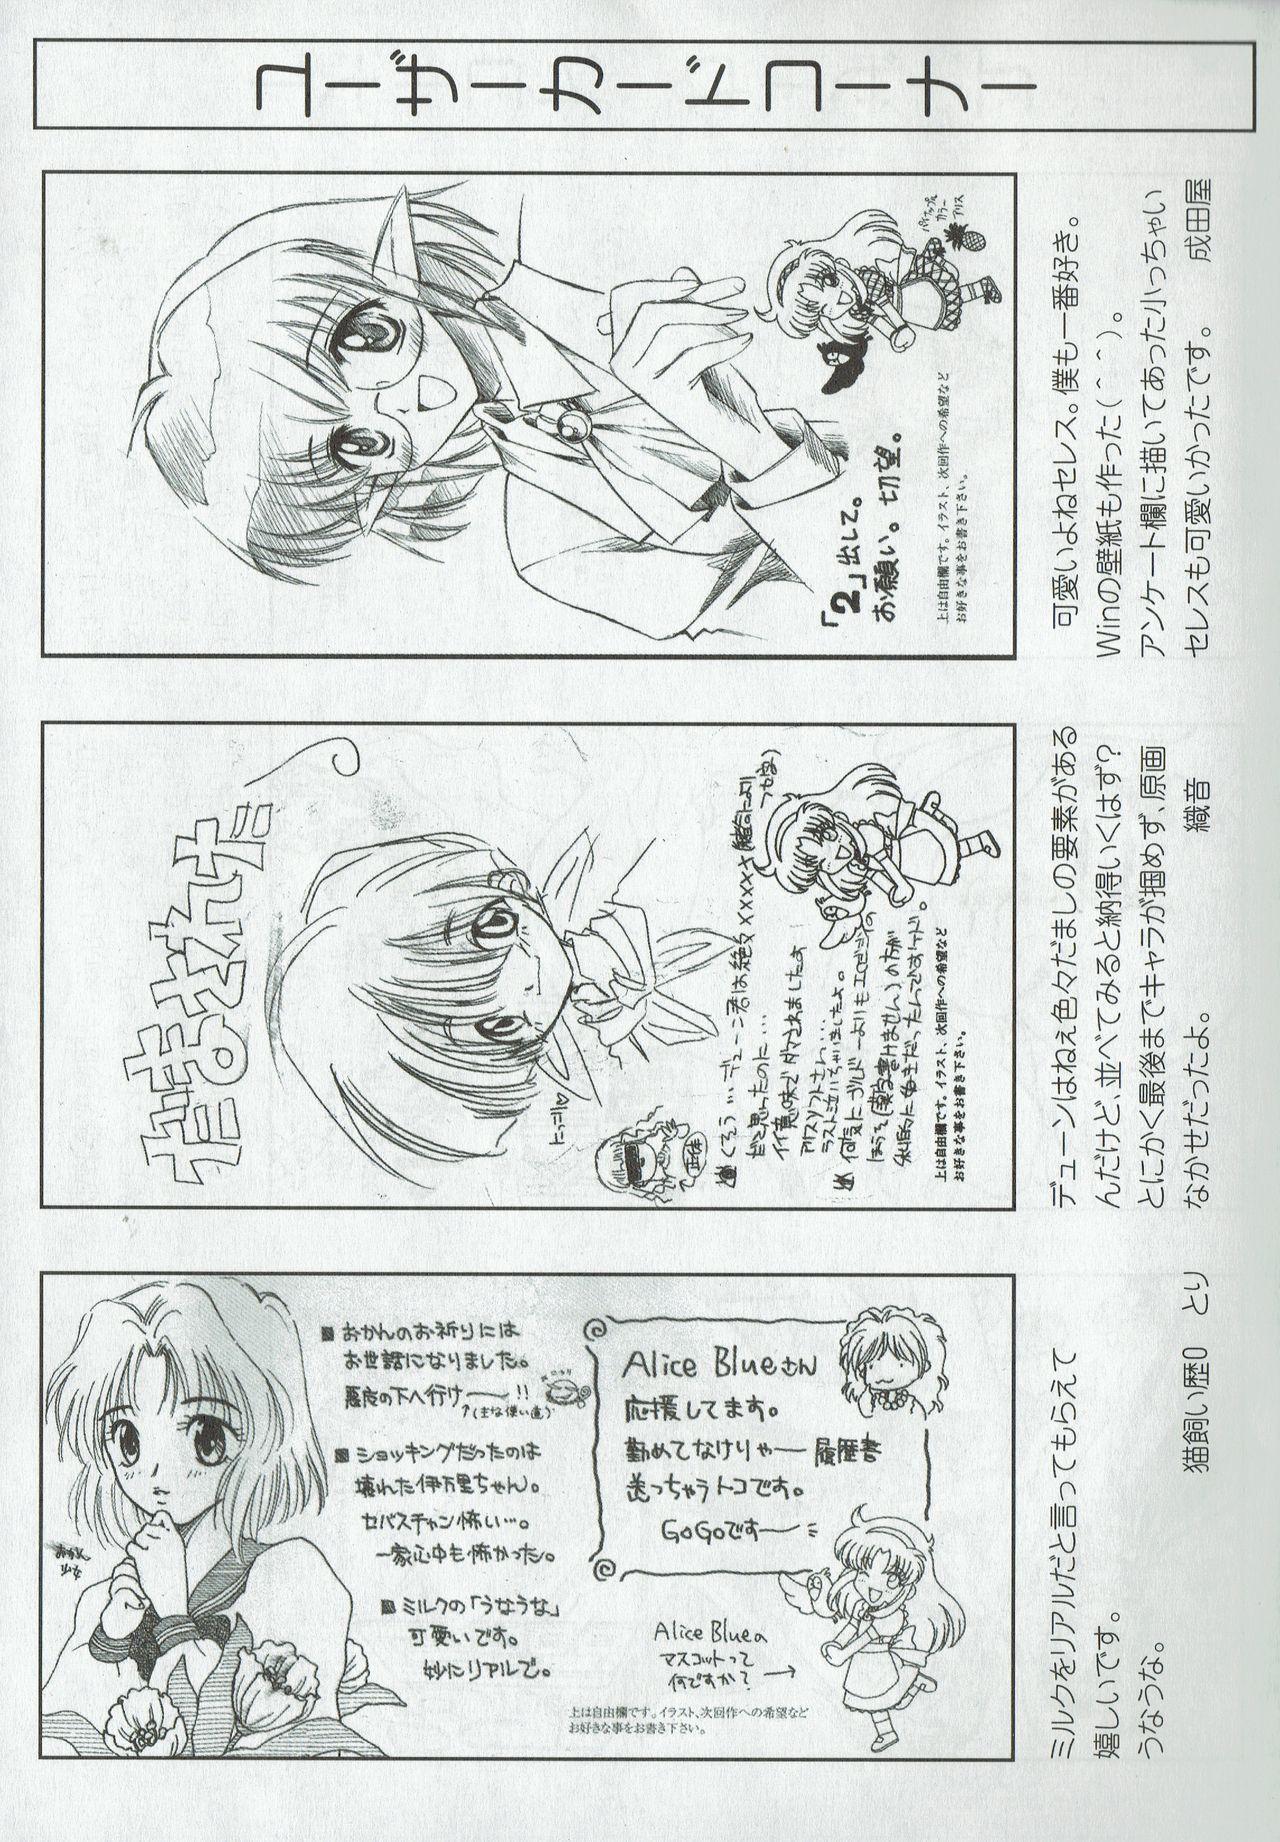 Arisu no Denchi Bakudan Vol. 09 23